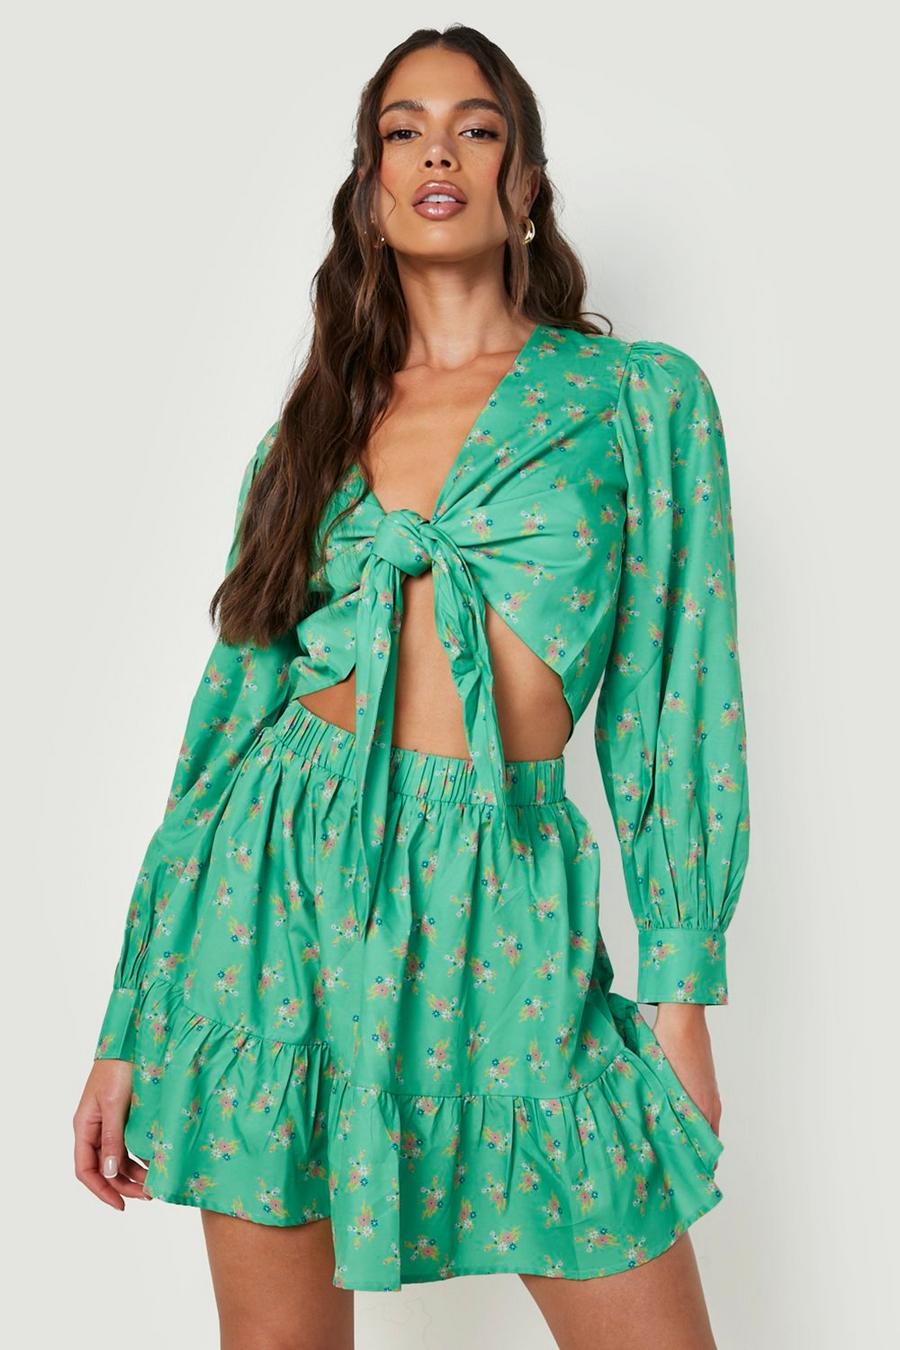 Falda y top con mangas bombachas, estampado de flores y nudo frontal, Apple green verde